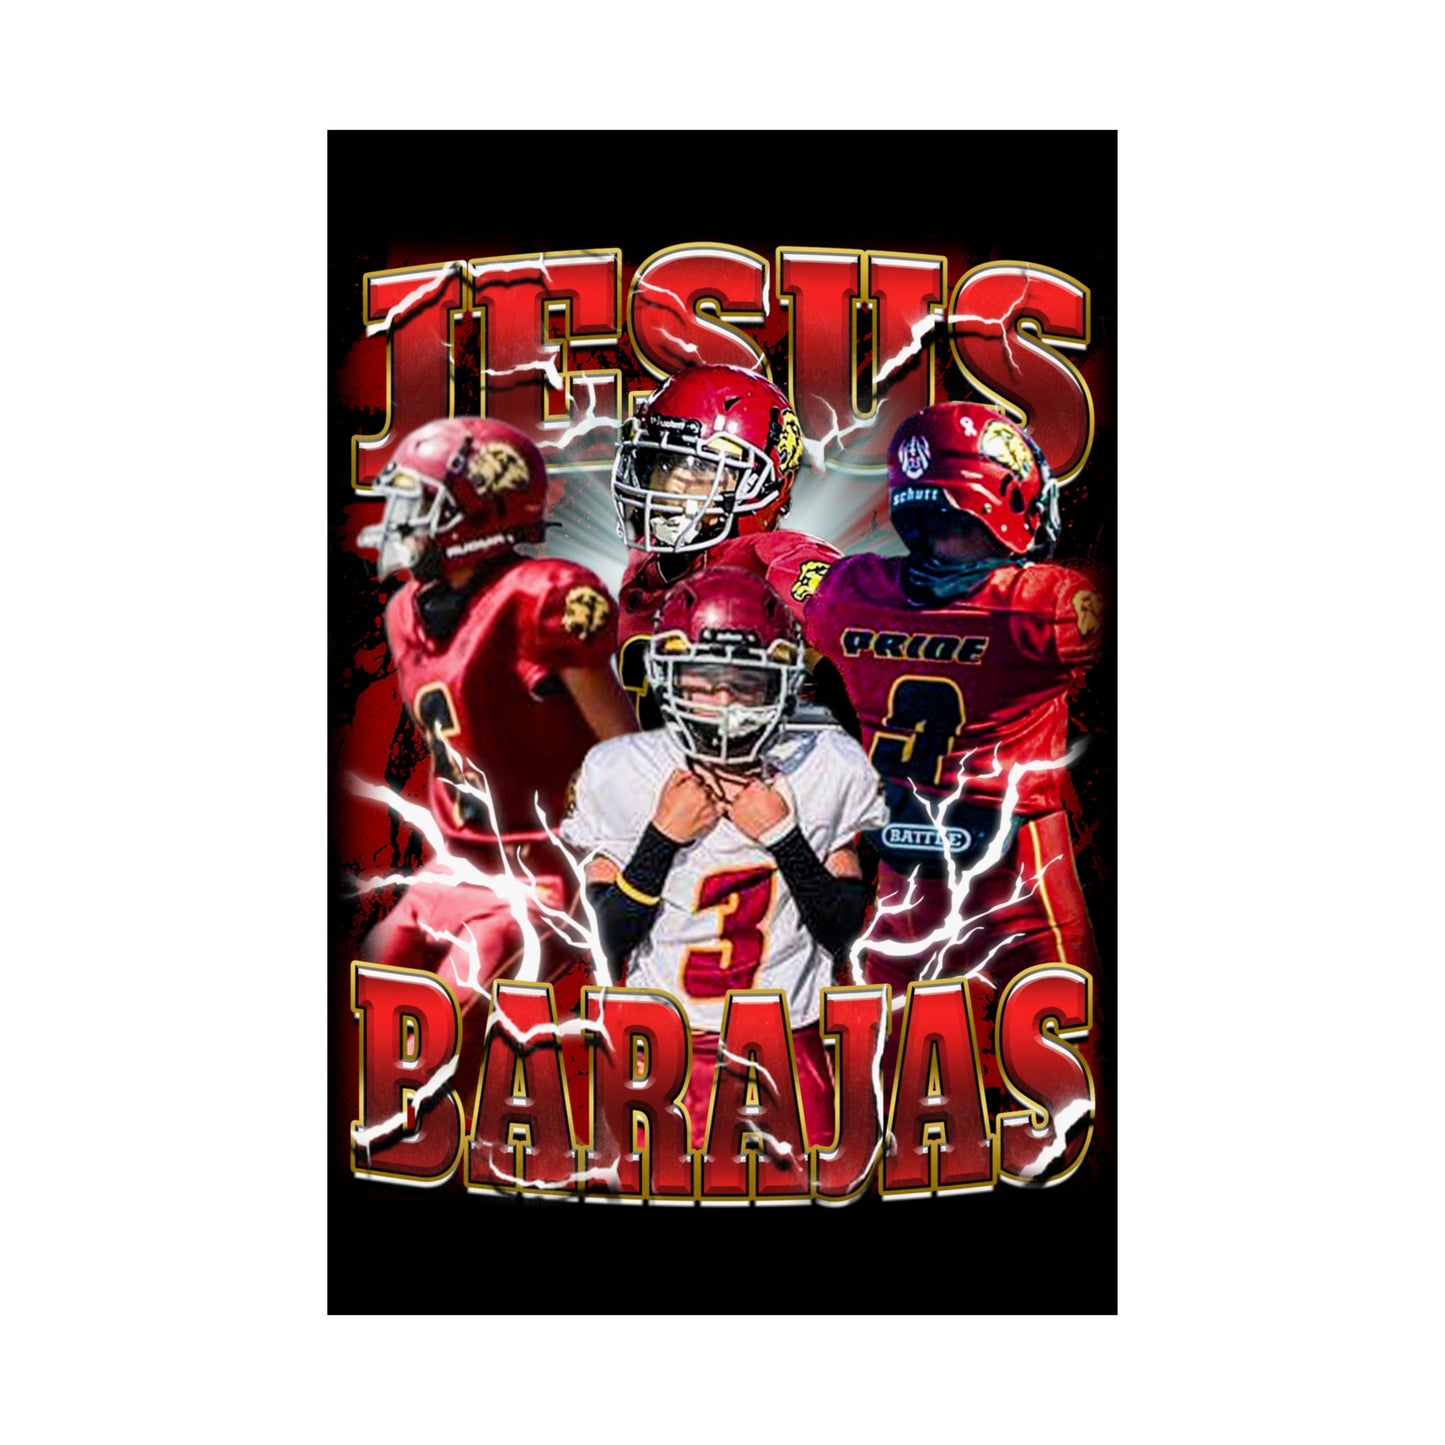 Jesus Barajas Poster 24" x 36"